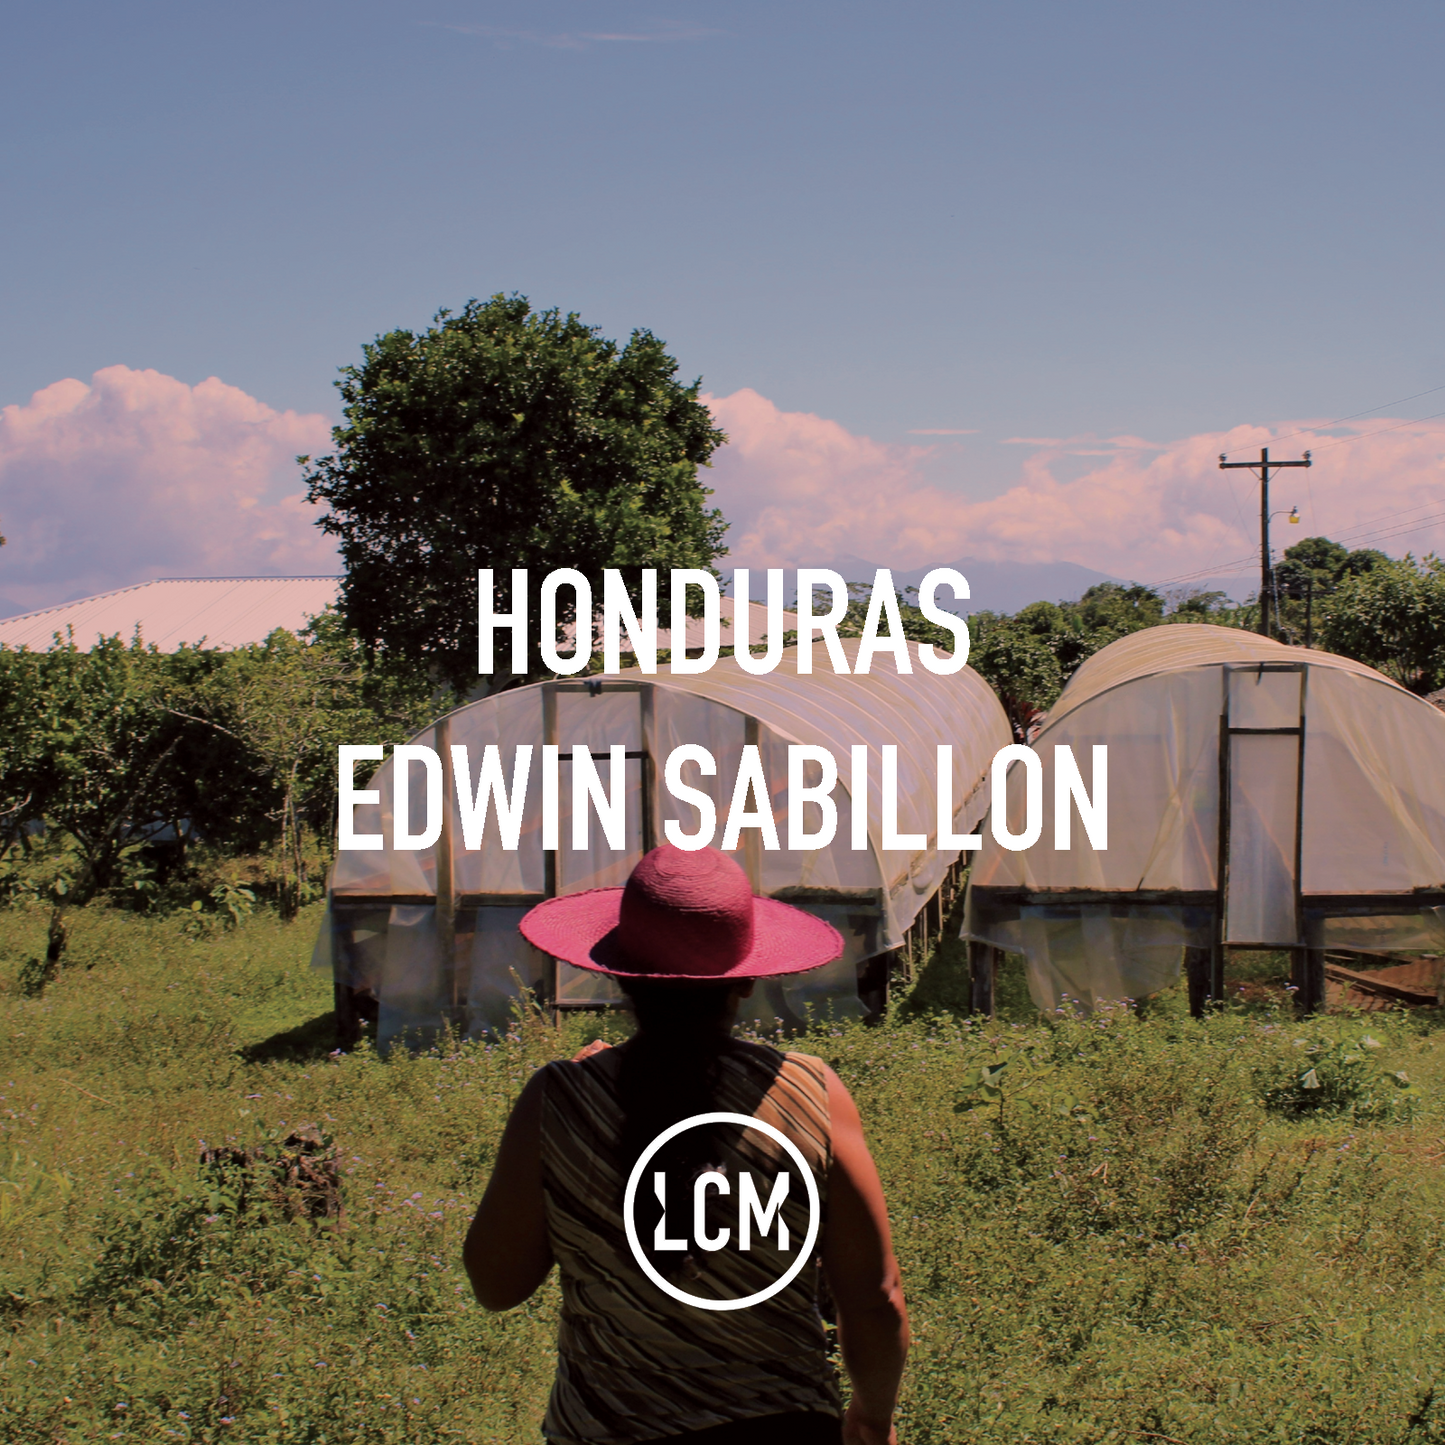 Honduras Edwin Sabillon